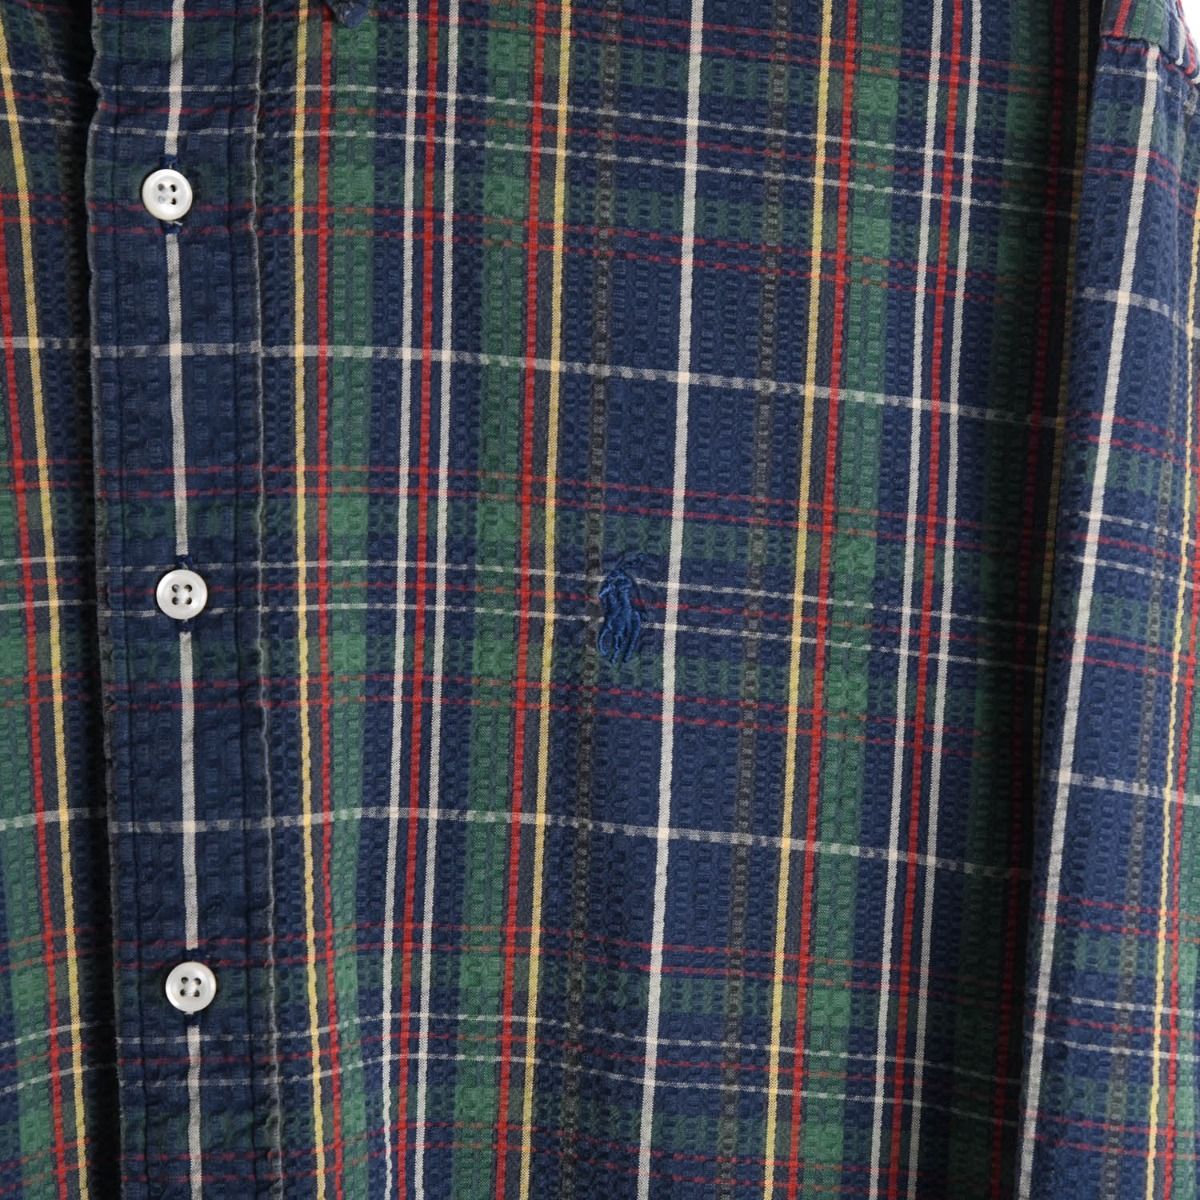 Ralph Lauren Checkered Pattern Shirt